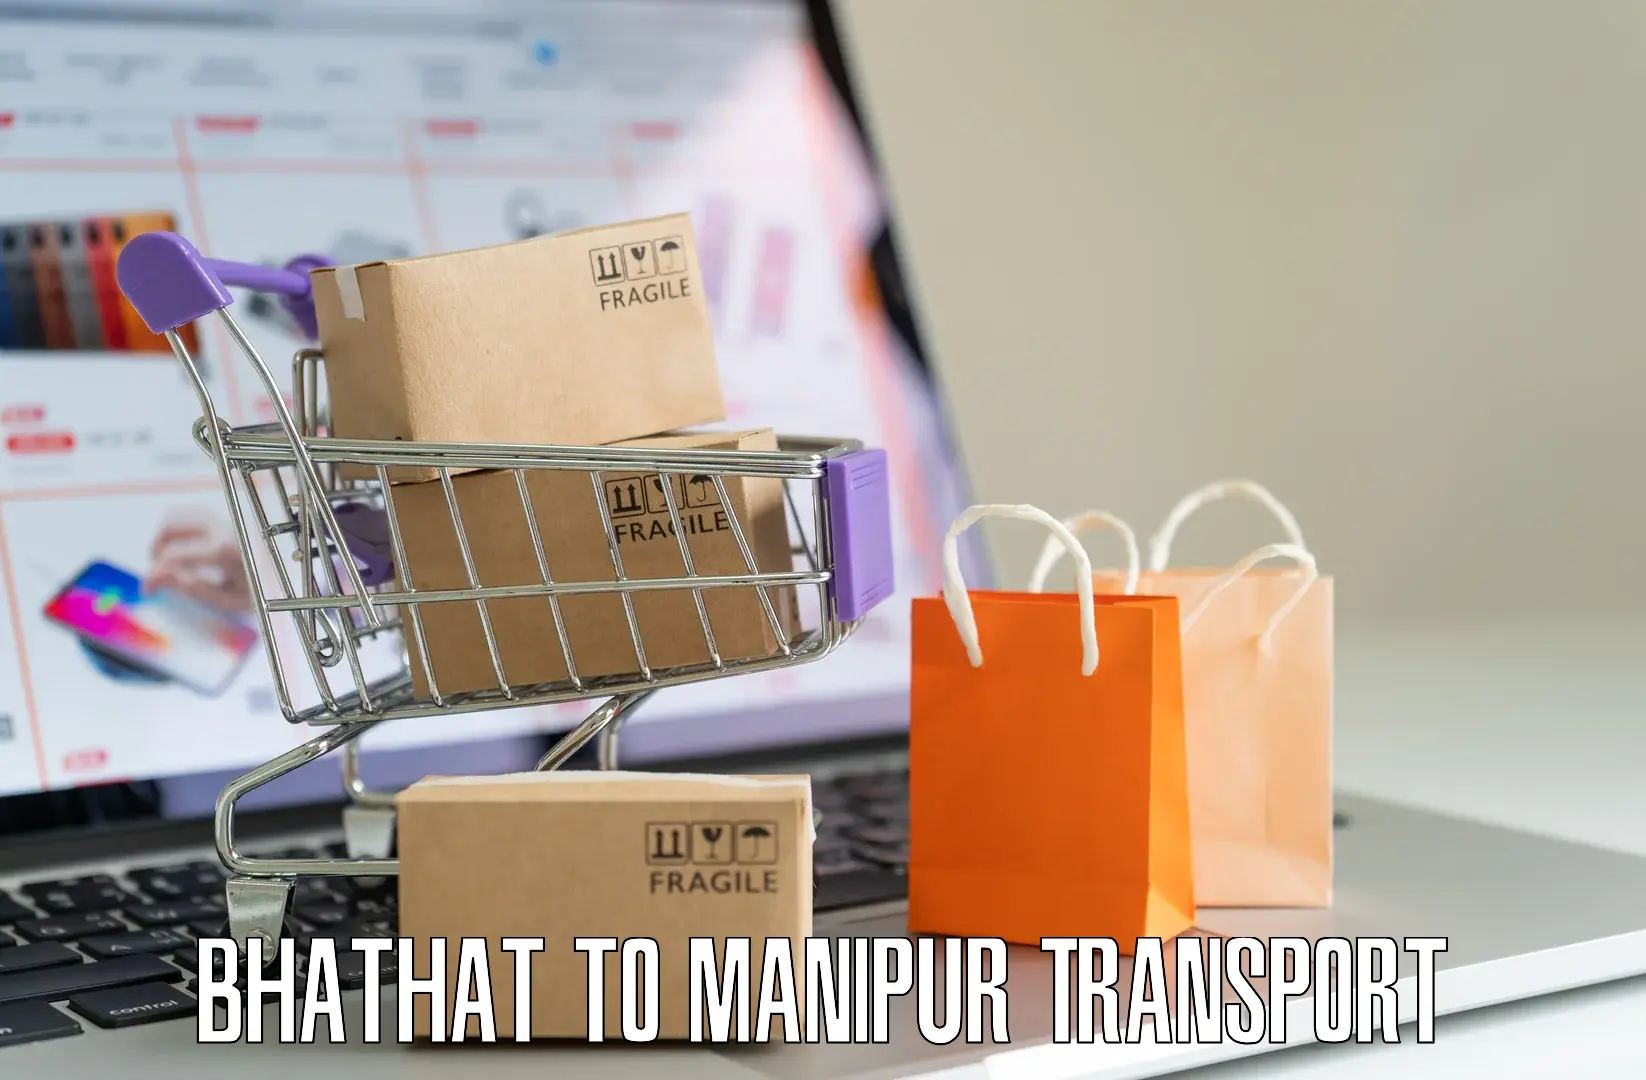 Online transport booking Bhathat to Churachandpur